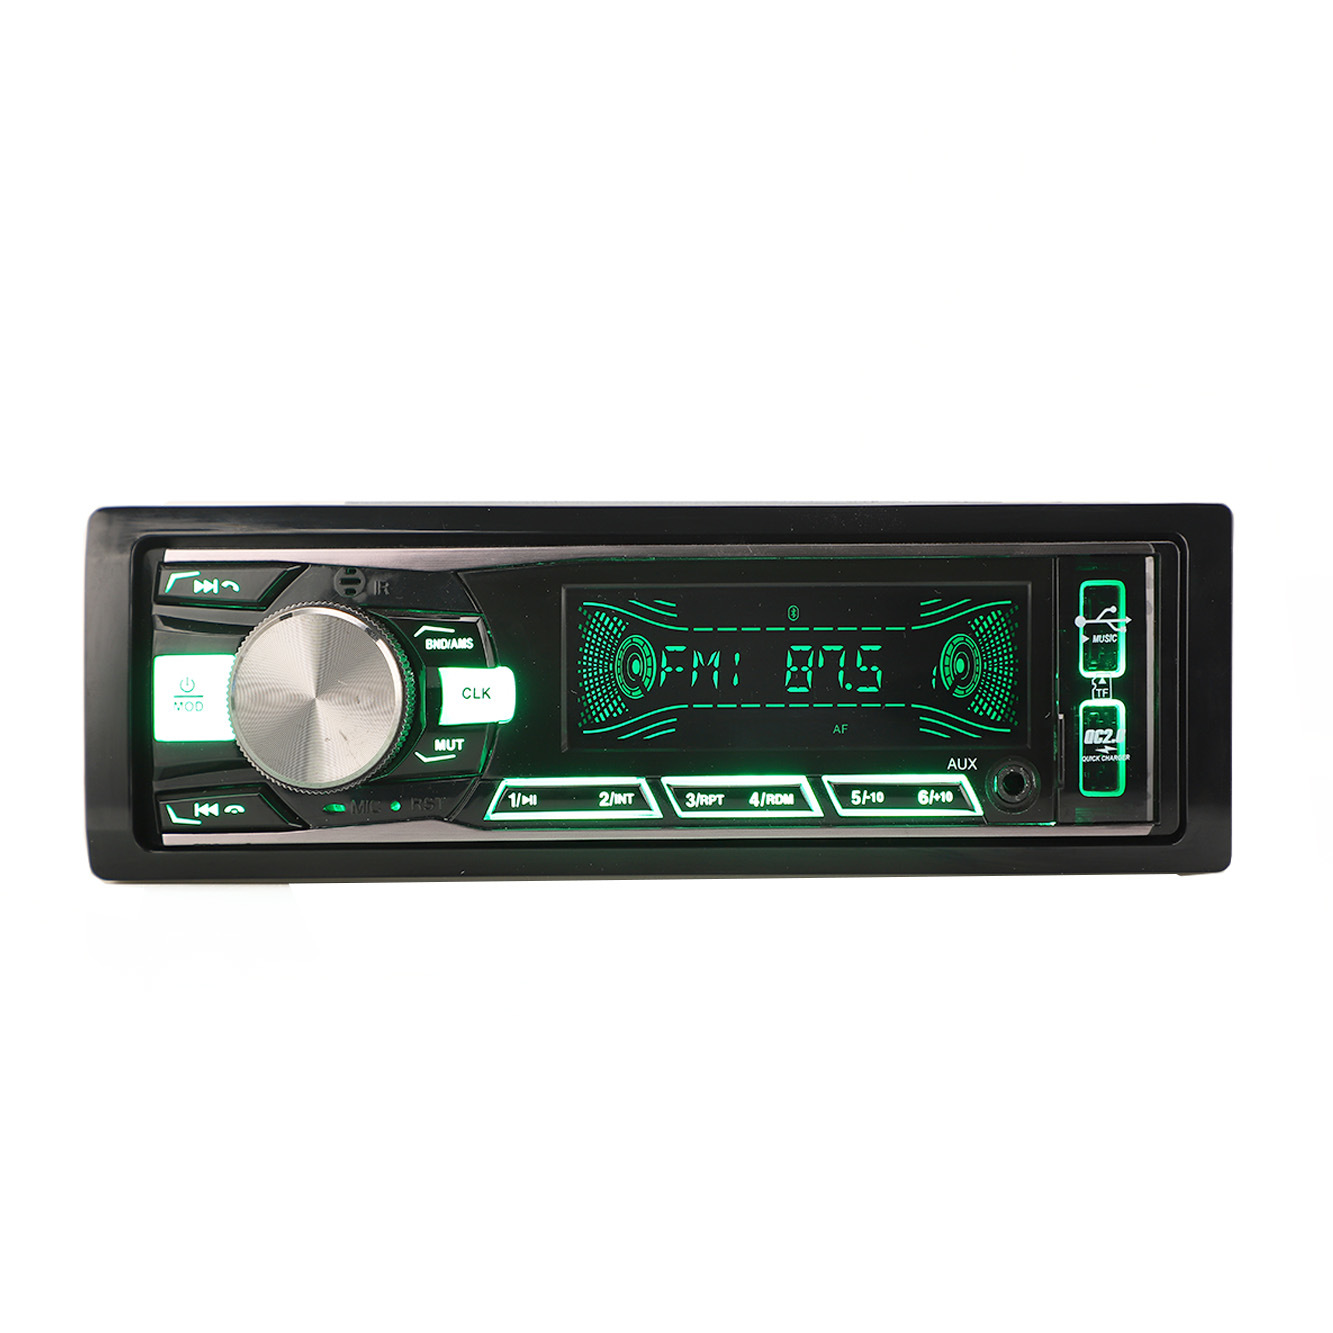 Painel fixo de áudio automático, reprodutor de mp3, áudio estéreo para carro, din único, reprodutor de carro